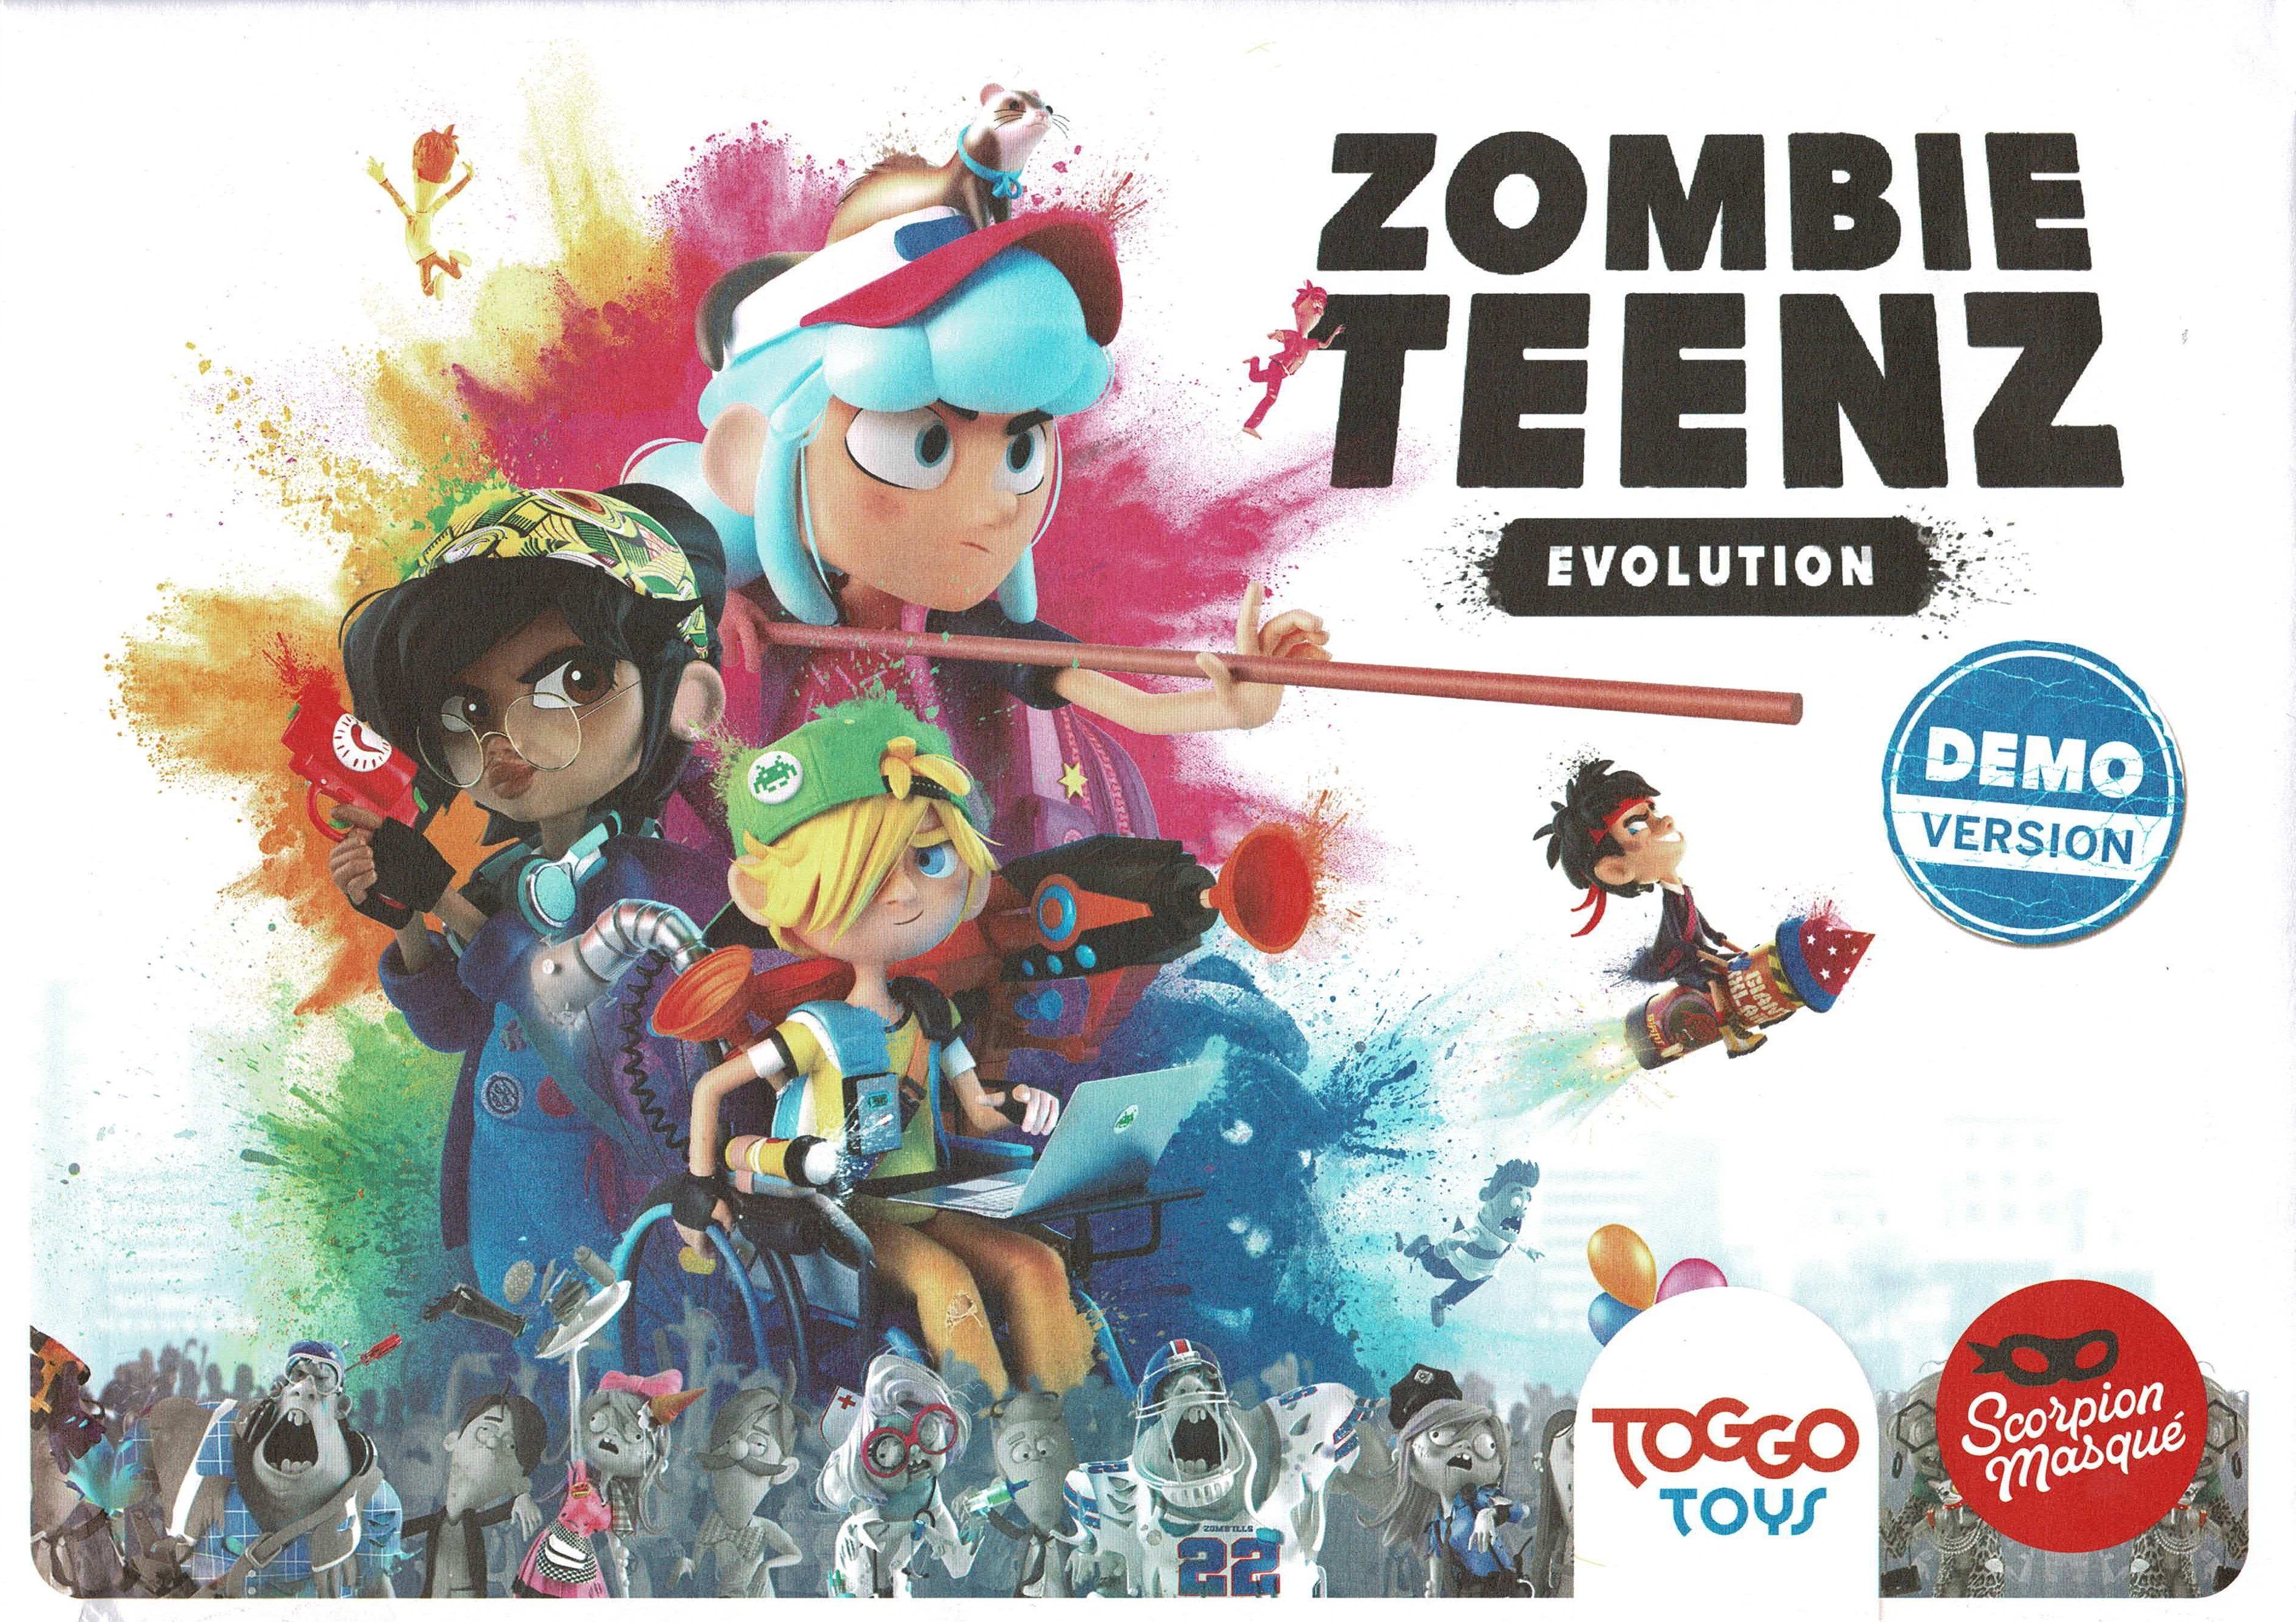 Idee+Spiel Spiel, Toggo Toys Zombie Teenz Evolution Demo Version für